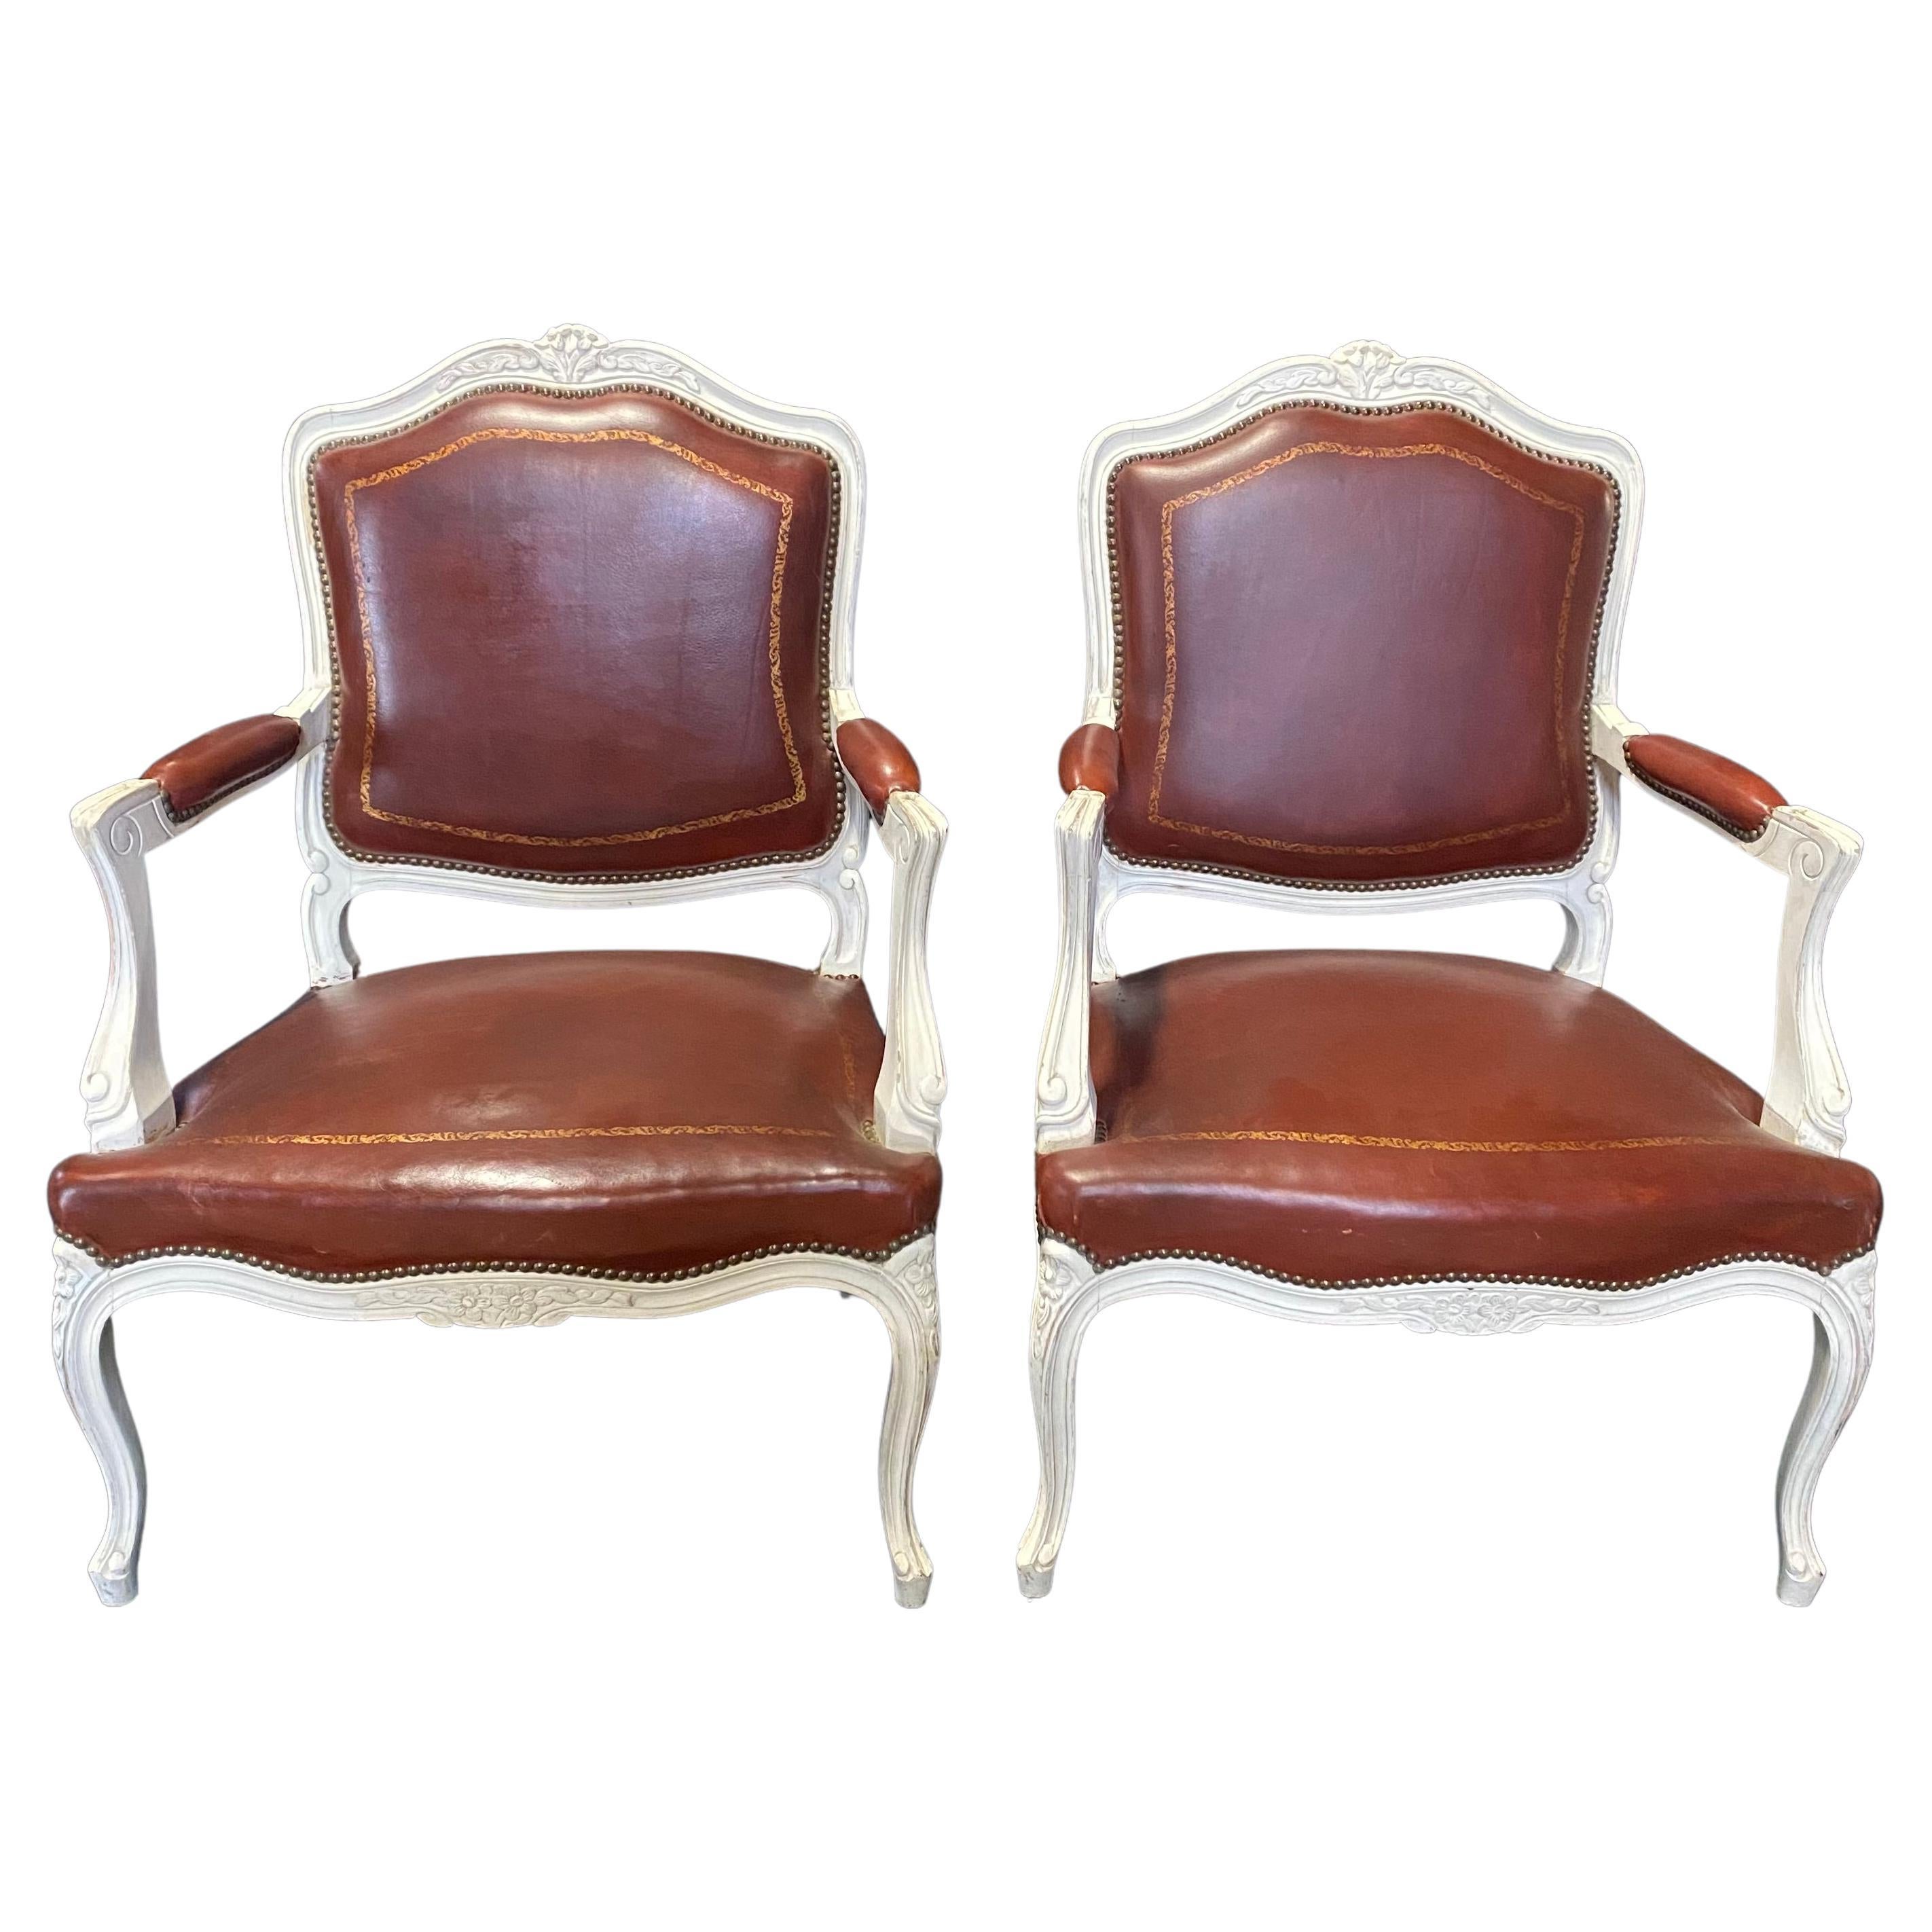 Magnifique paire de fauteuils français en cuir caramel et bois sculpté blanc